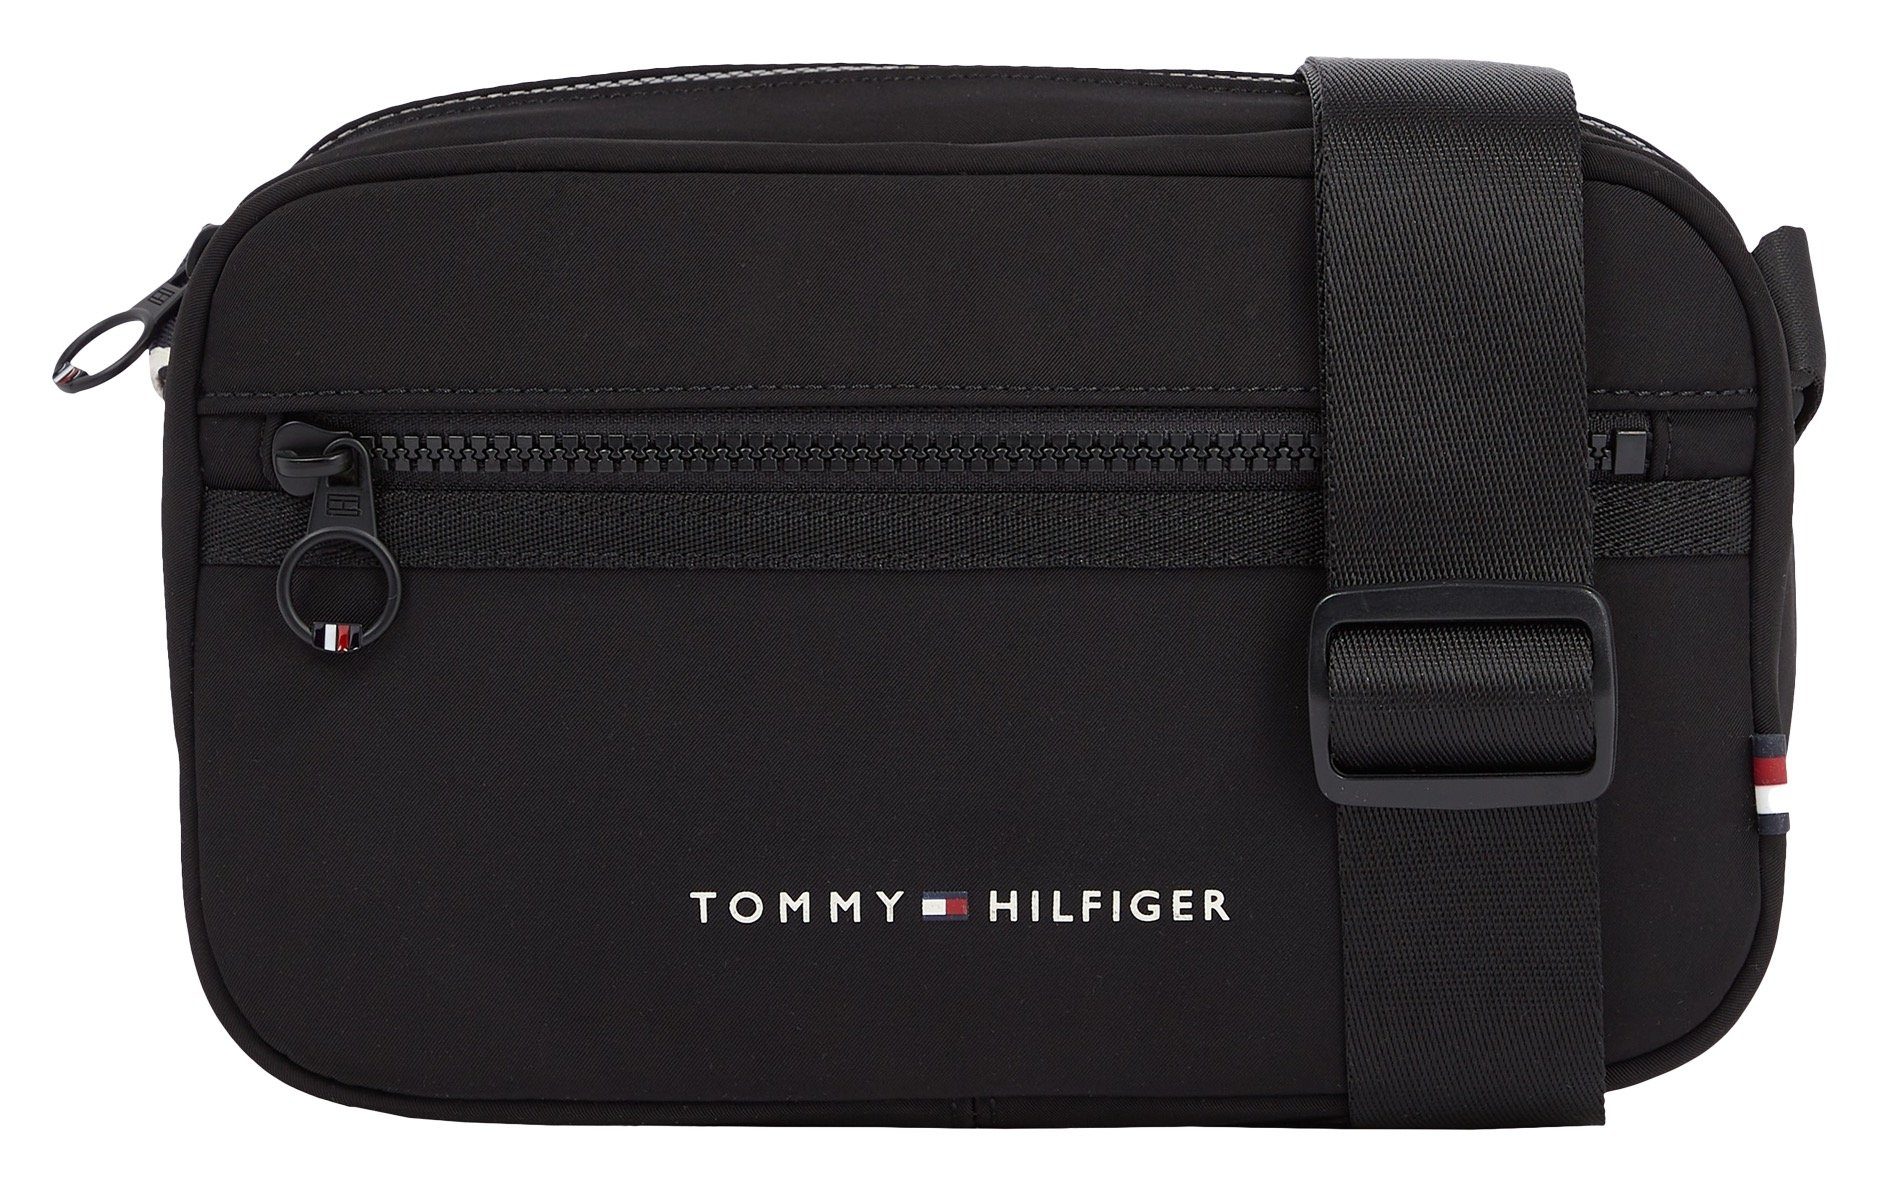 Bag Design EW SKYLINE Mini REPORTER, Hilfiger TH im Tommy schlichten